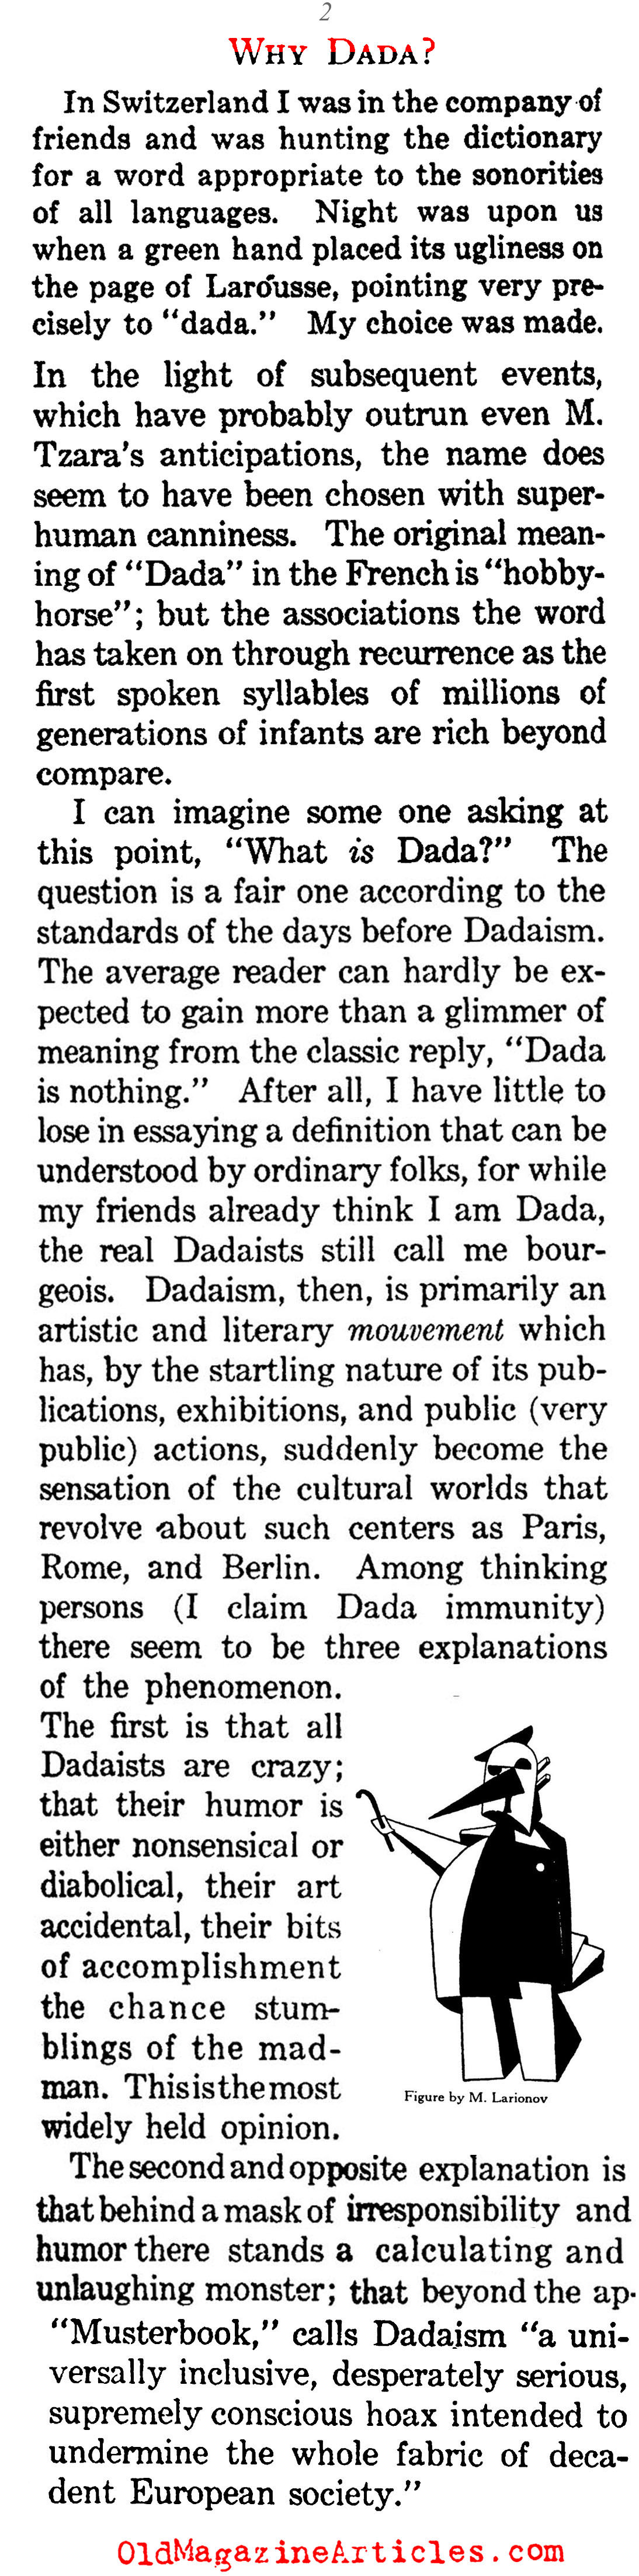 Why Dada? (The Century Magazine, 1922)